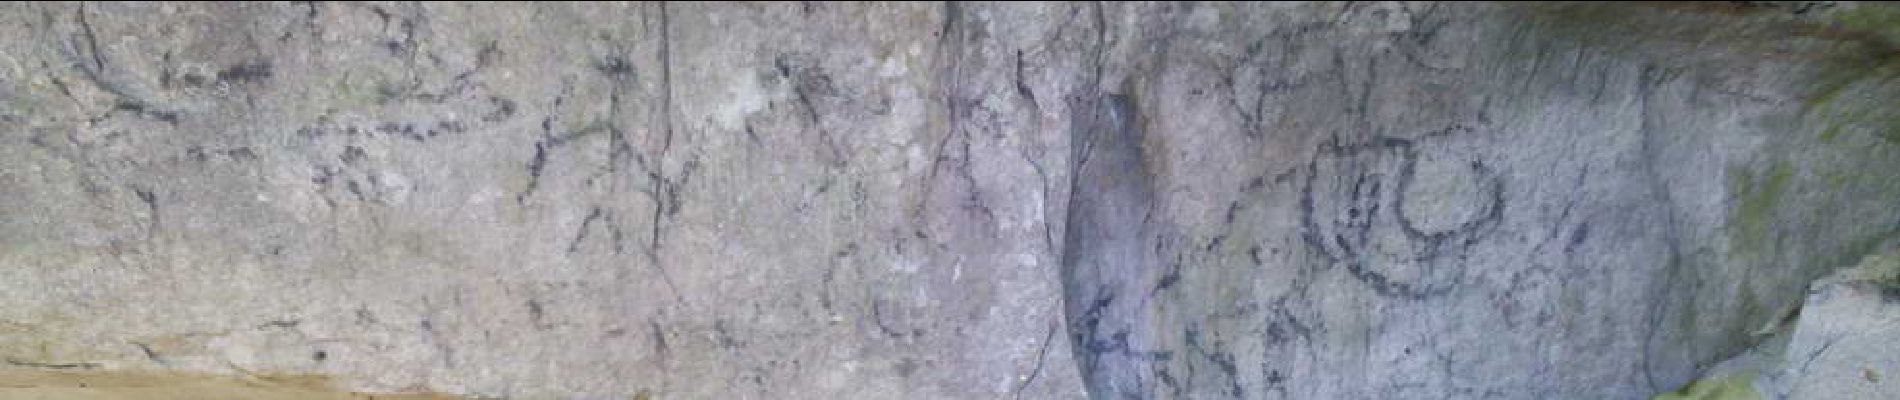 Point d'intérêt Arbonne-la-Forêt - 04 - Peintures préhistoriques (début du 3e millénaire après JC) - Photo